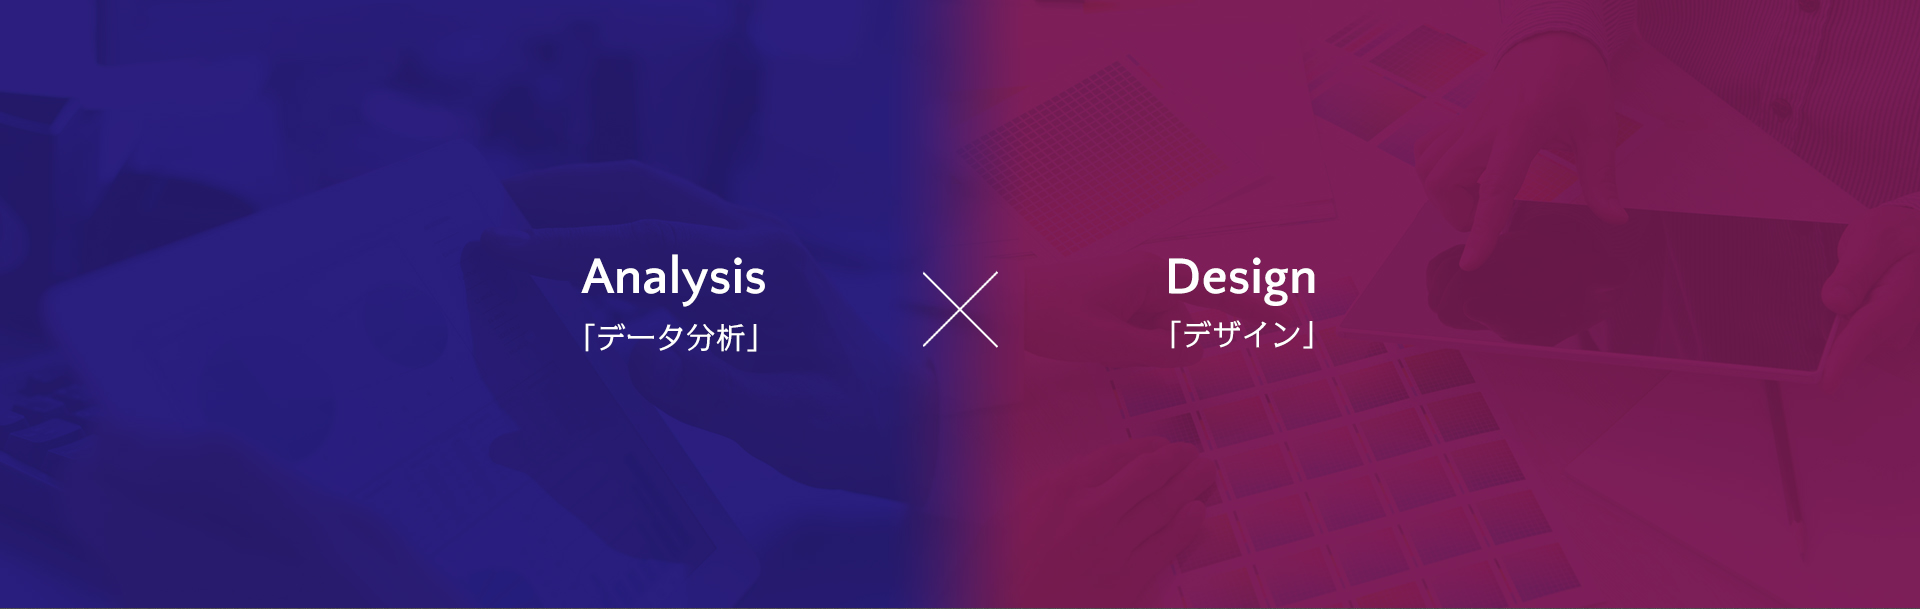 Analysis「データ分析」×Design「デザイン」